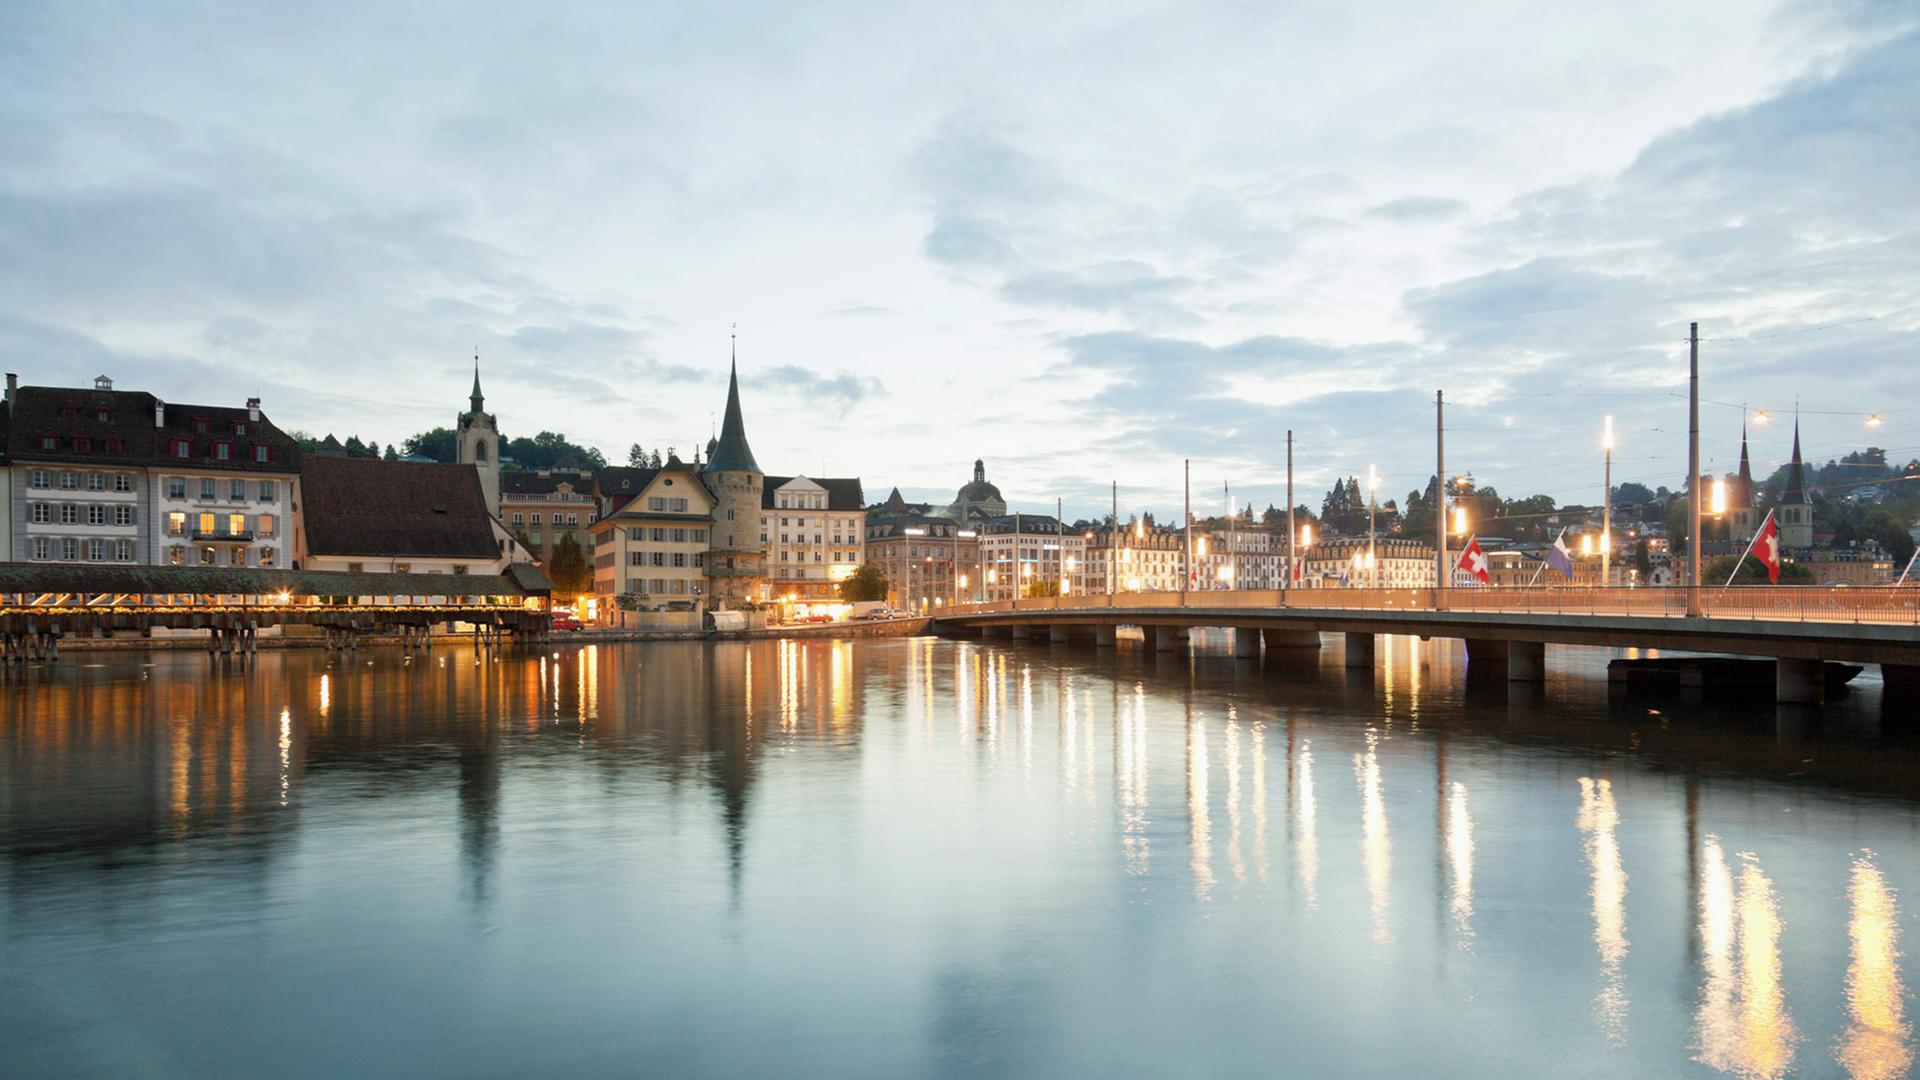 Die Stadt Luzern in der Schweiz im Dämmerlicht, auch die Straßenlaternen leuchten hell.